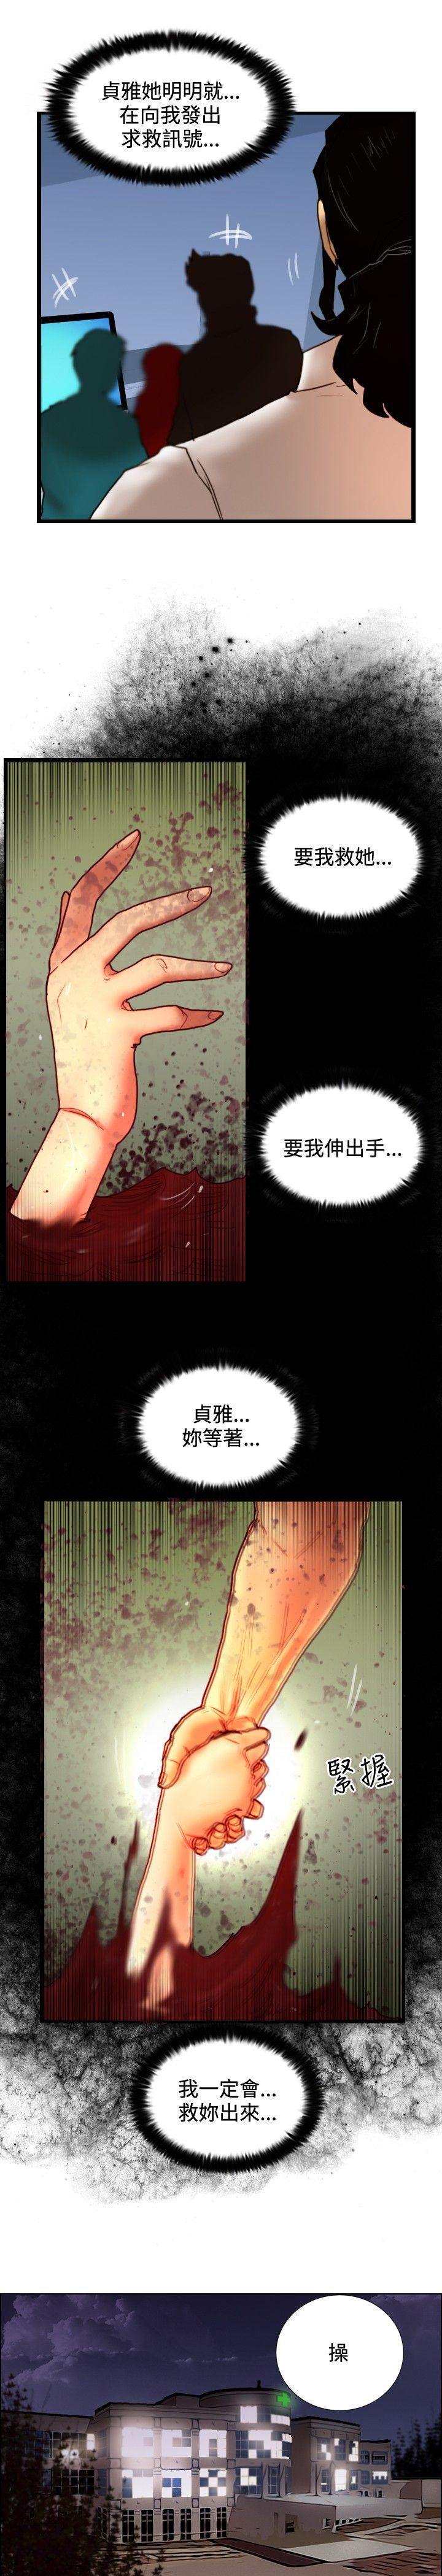 韩国污漫画 覺醒(完結) 第27话自杀社团 19